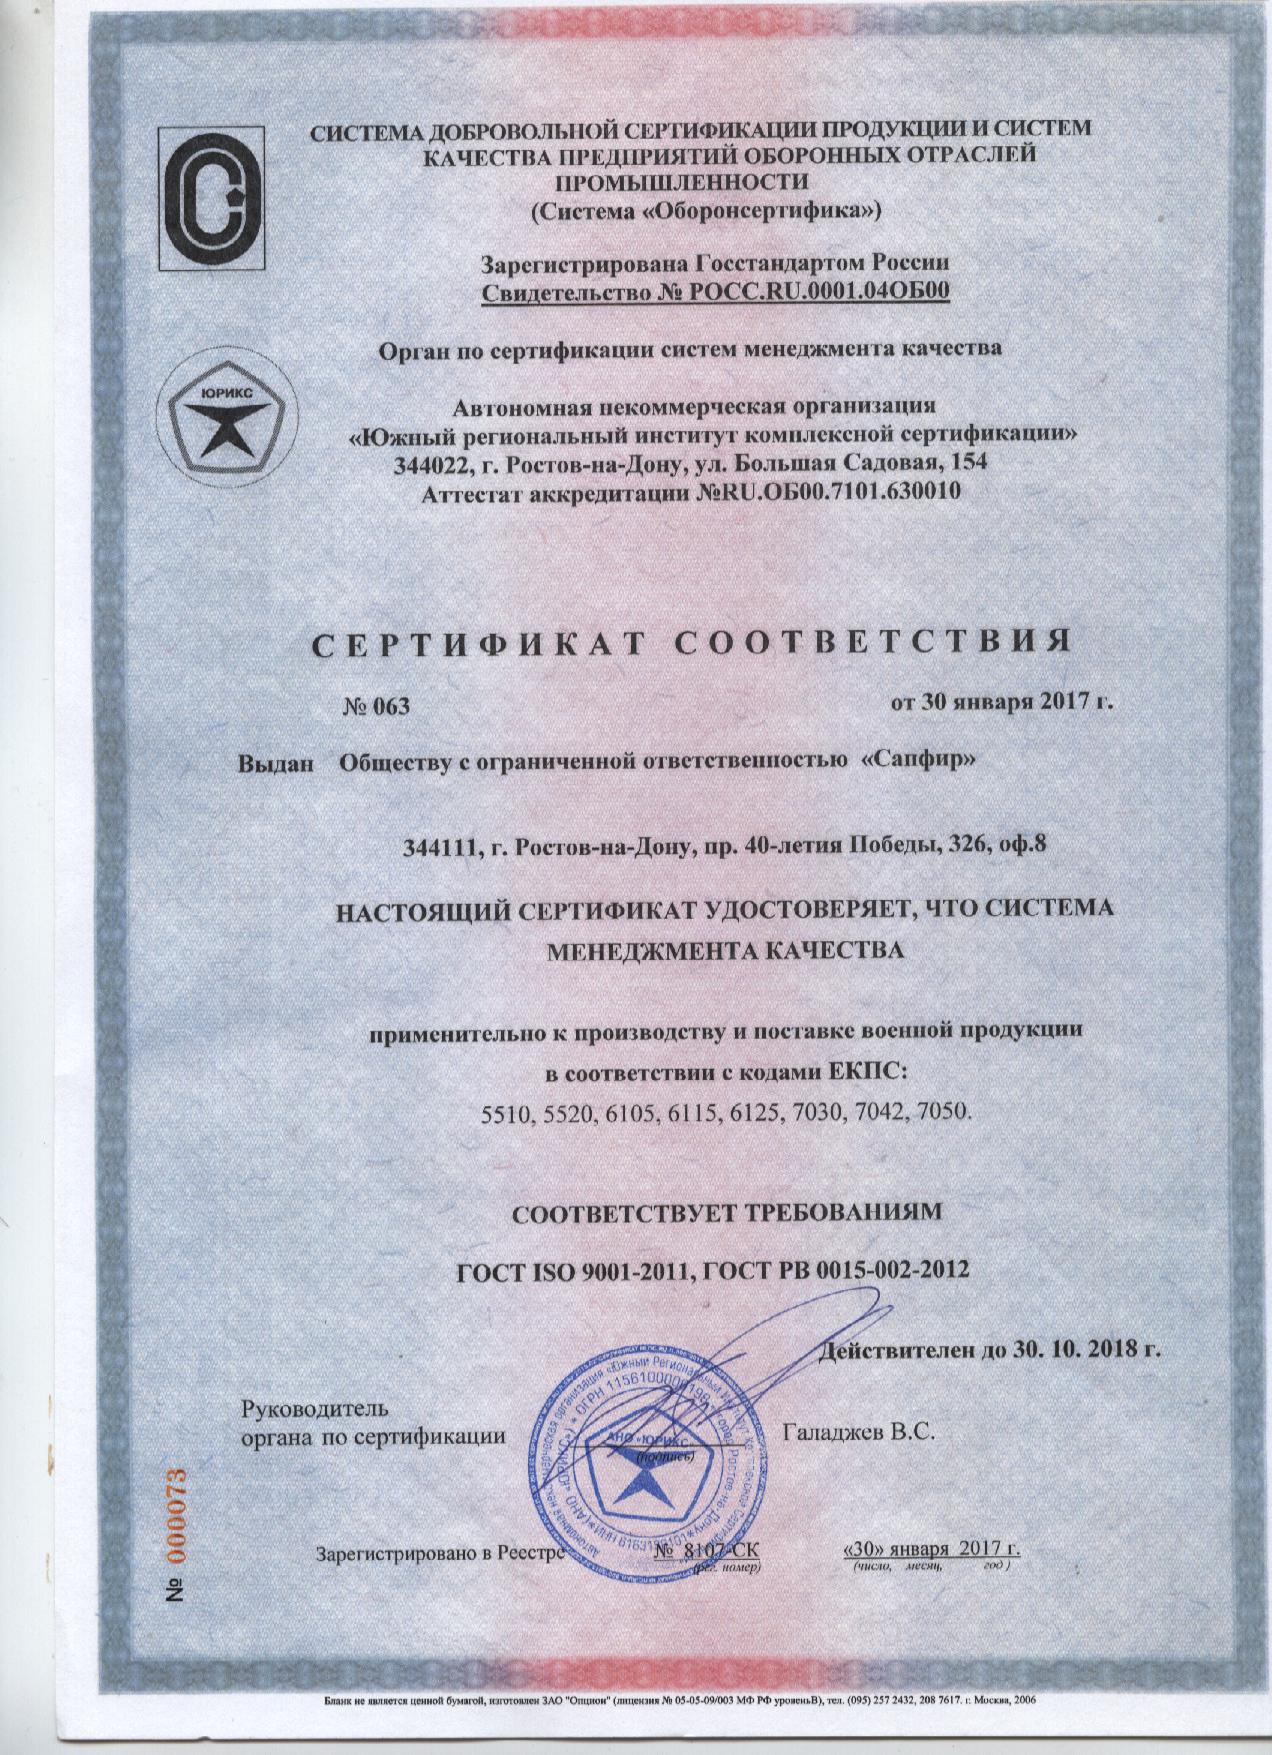 Получить сертификат гост рв 0015-002-2020 - promoboron.ru